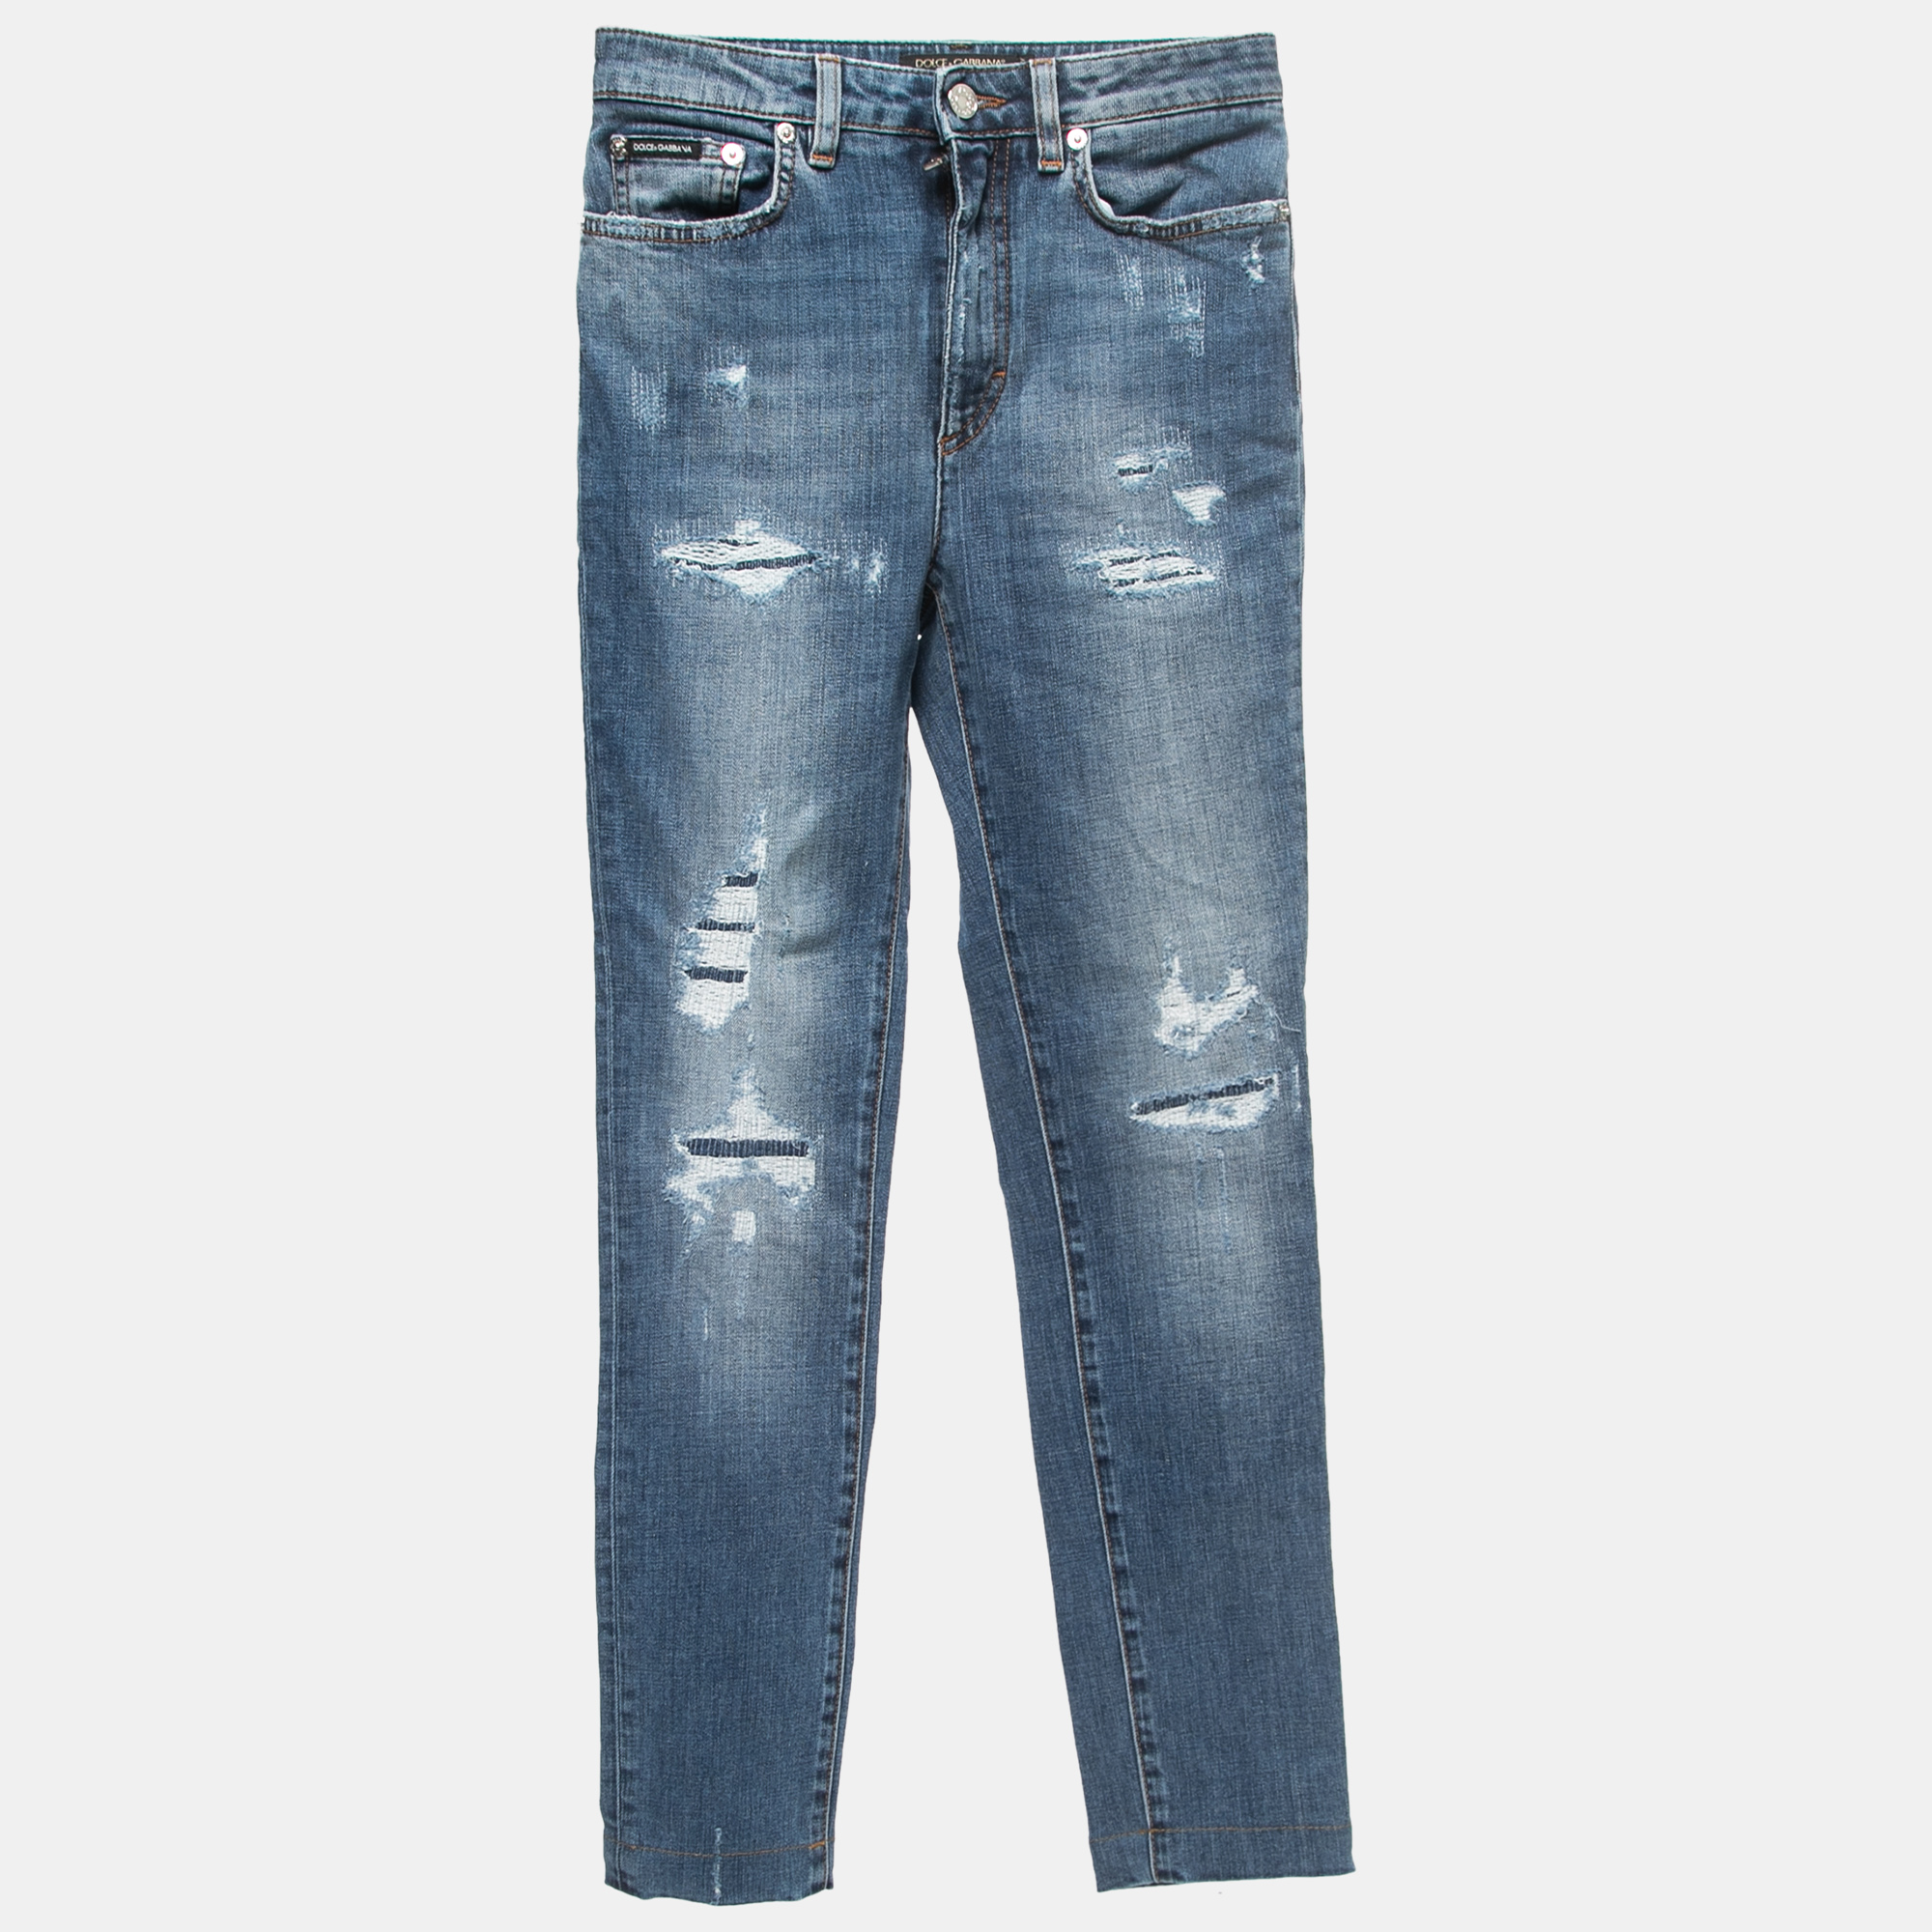 Dolce & Gabbana Blue Distressed Denim Audrey Skinny Jeans XS Waist 24